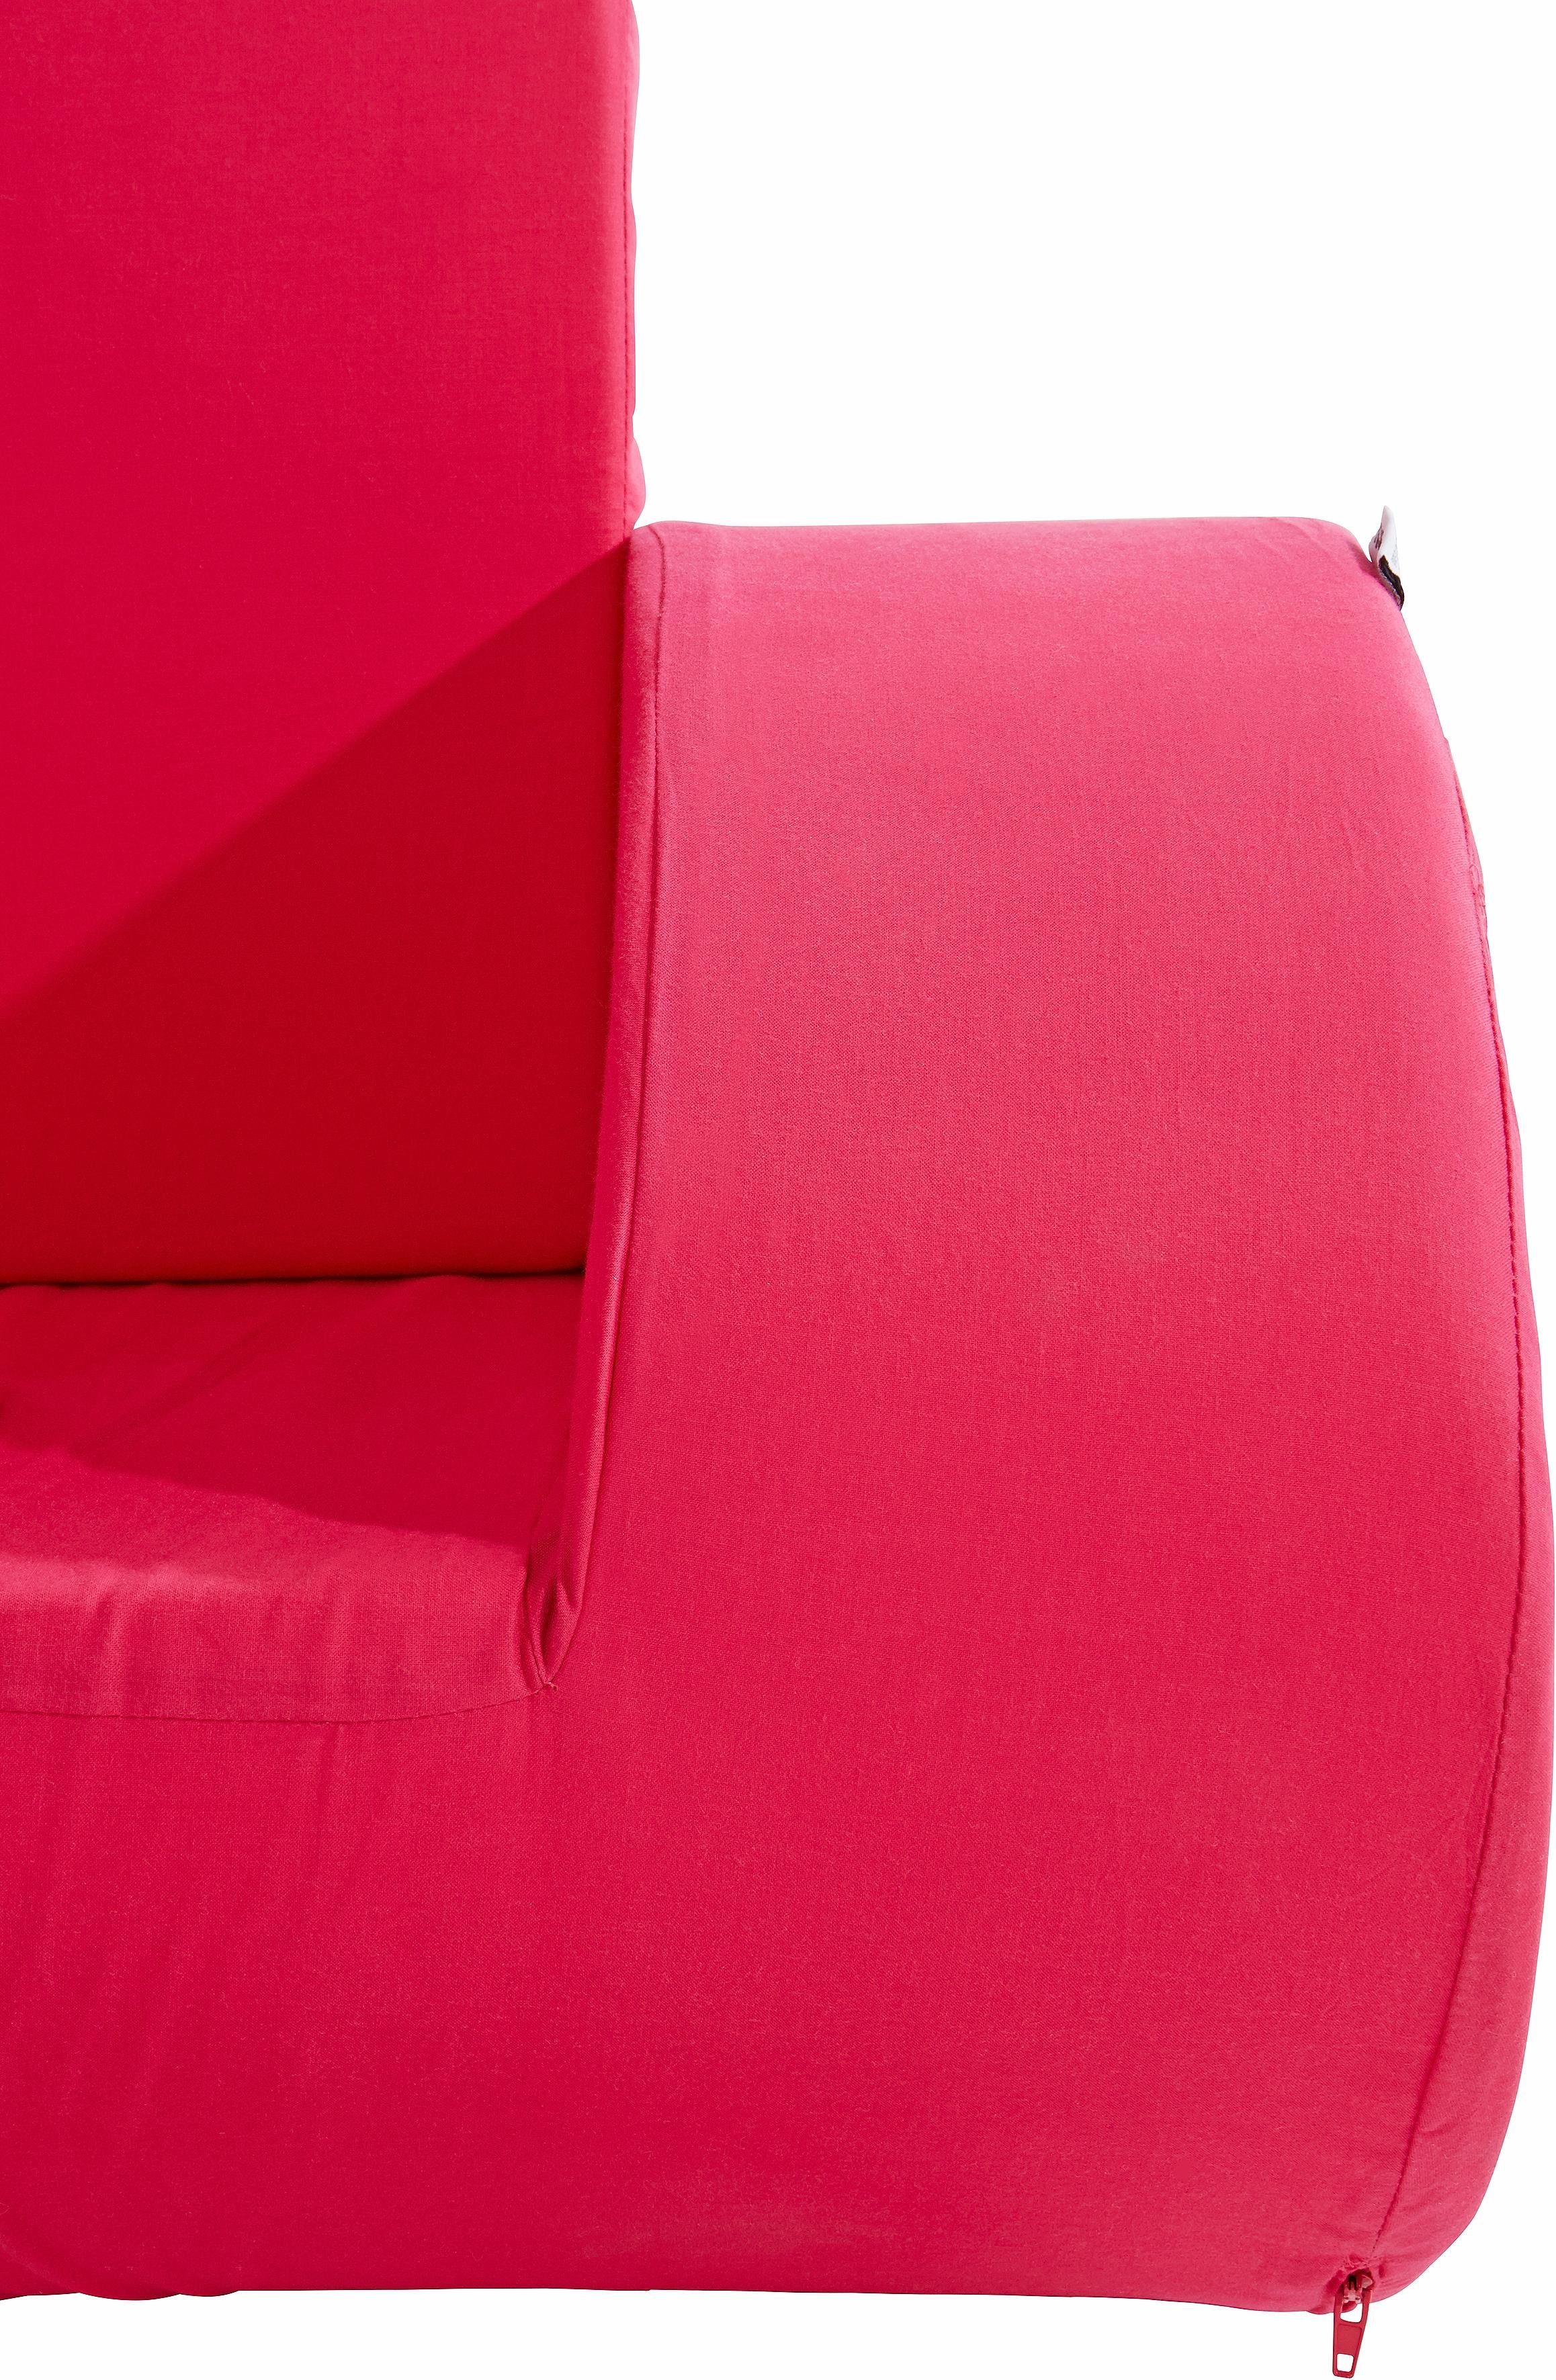 Hoppekids Sessel, Kindersessel Schaukelstuhl in pink Farben 2